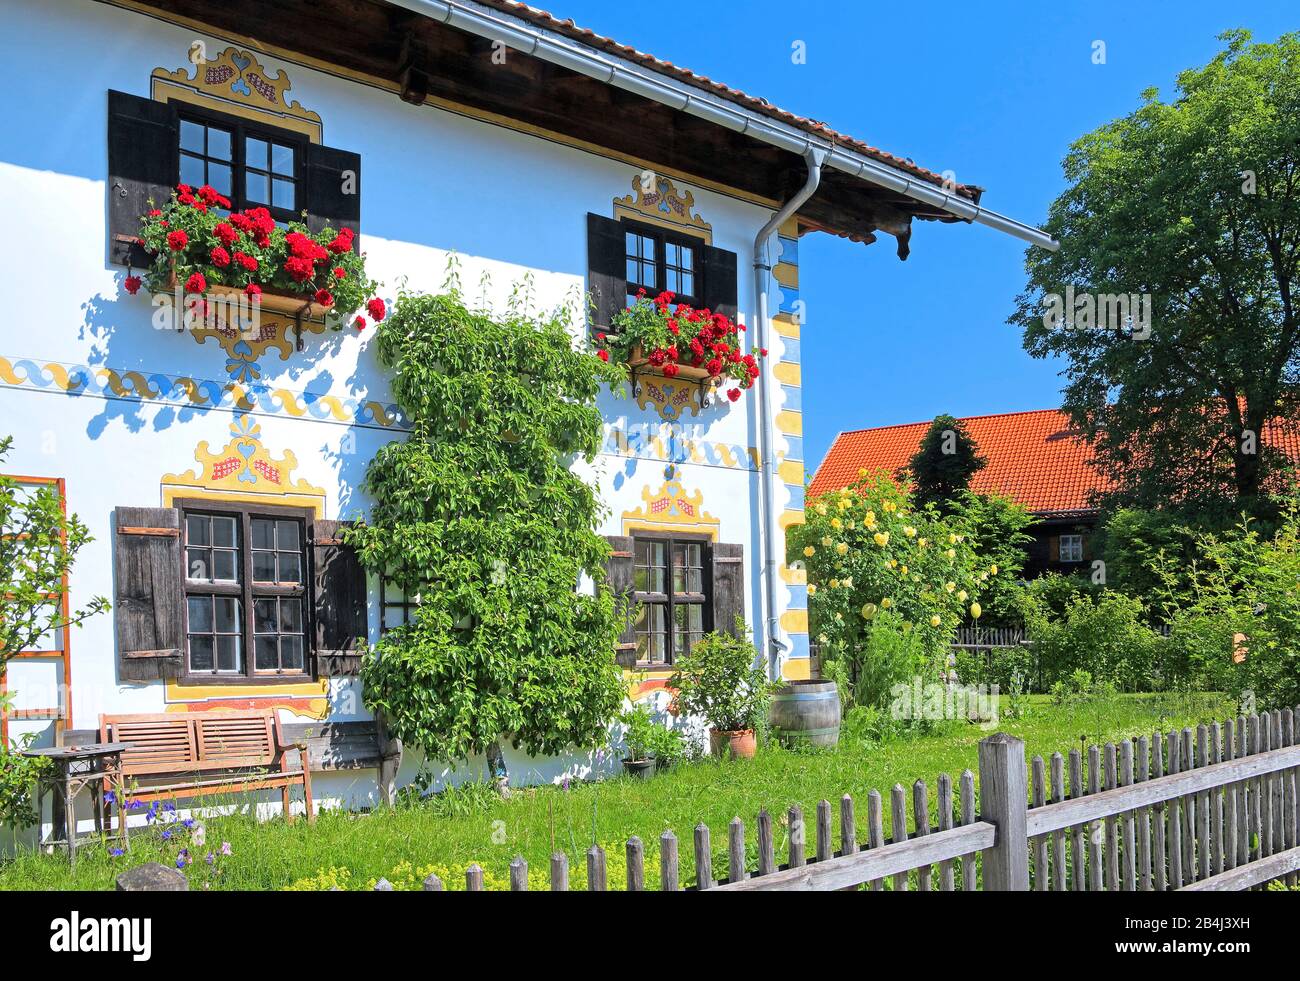 Seitenansicht eines oberbayerischen Landhauses mit Garten- und Blumenarrangements in Ohlstadt, Loisachtal, Oberbayern, Bayern, Deutschland Stockfoto